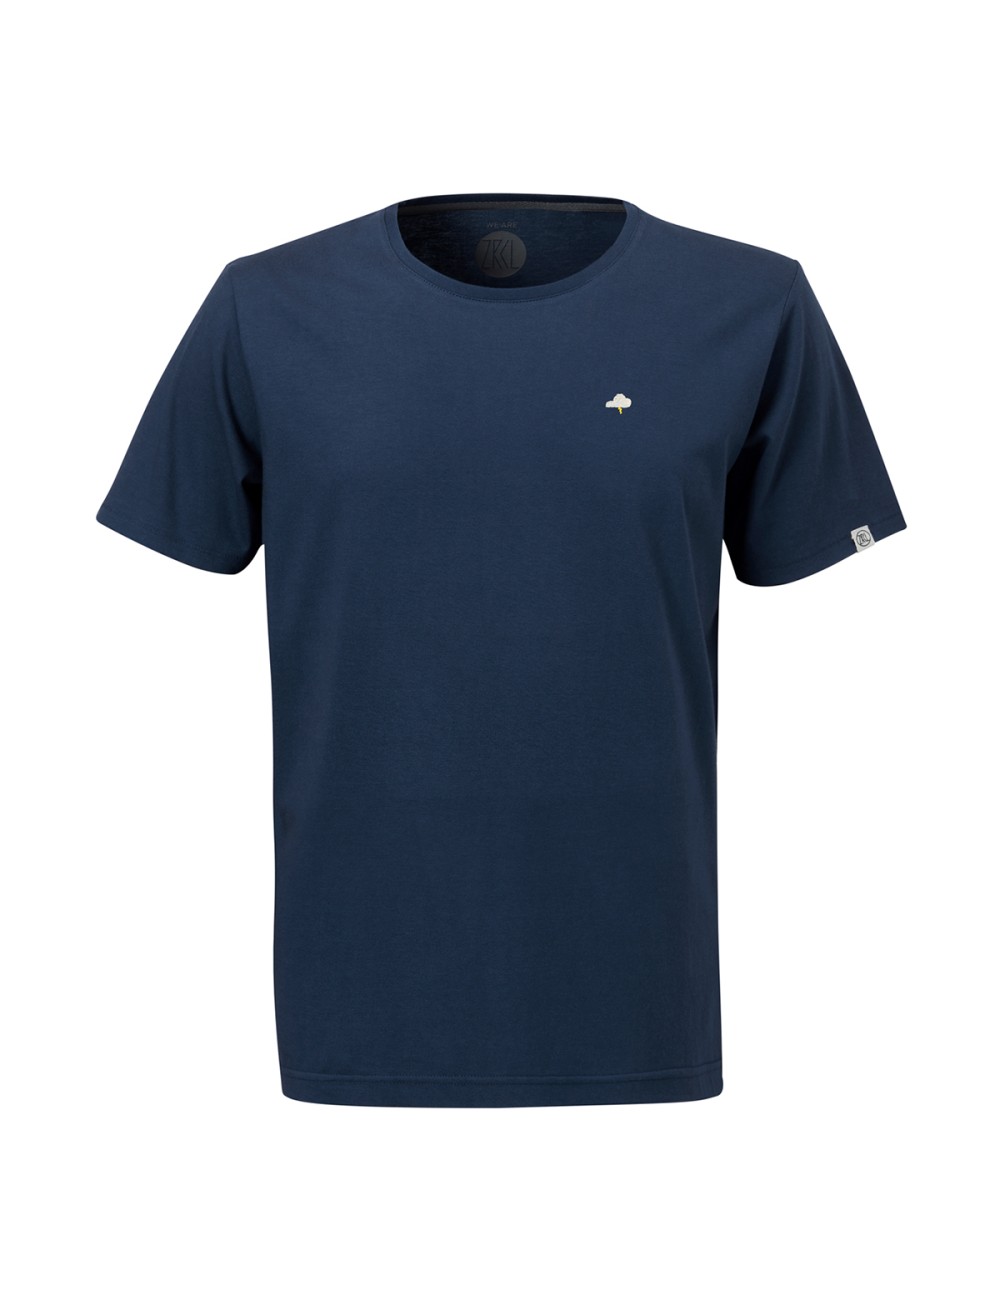 ZRCL T-Shirt Thunder - Blue